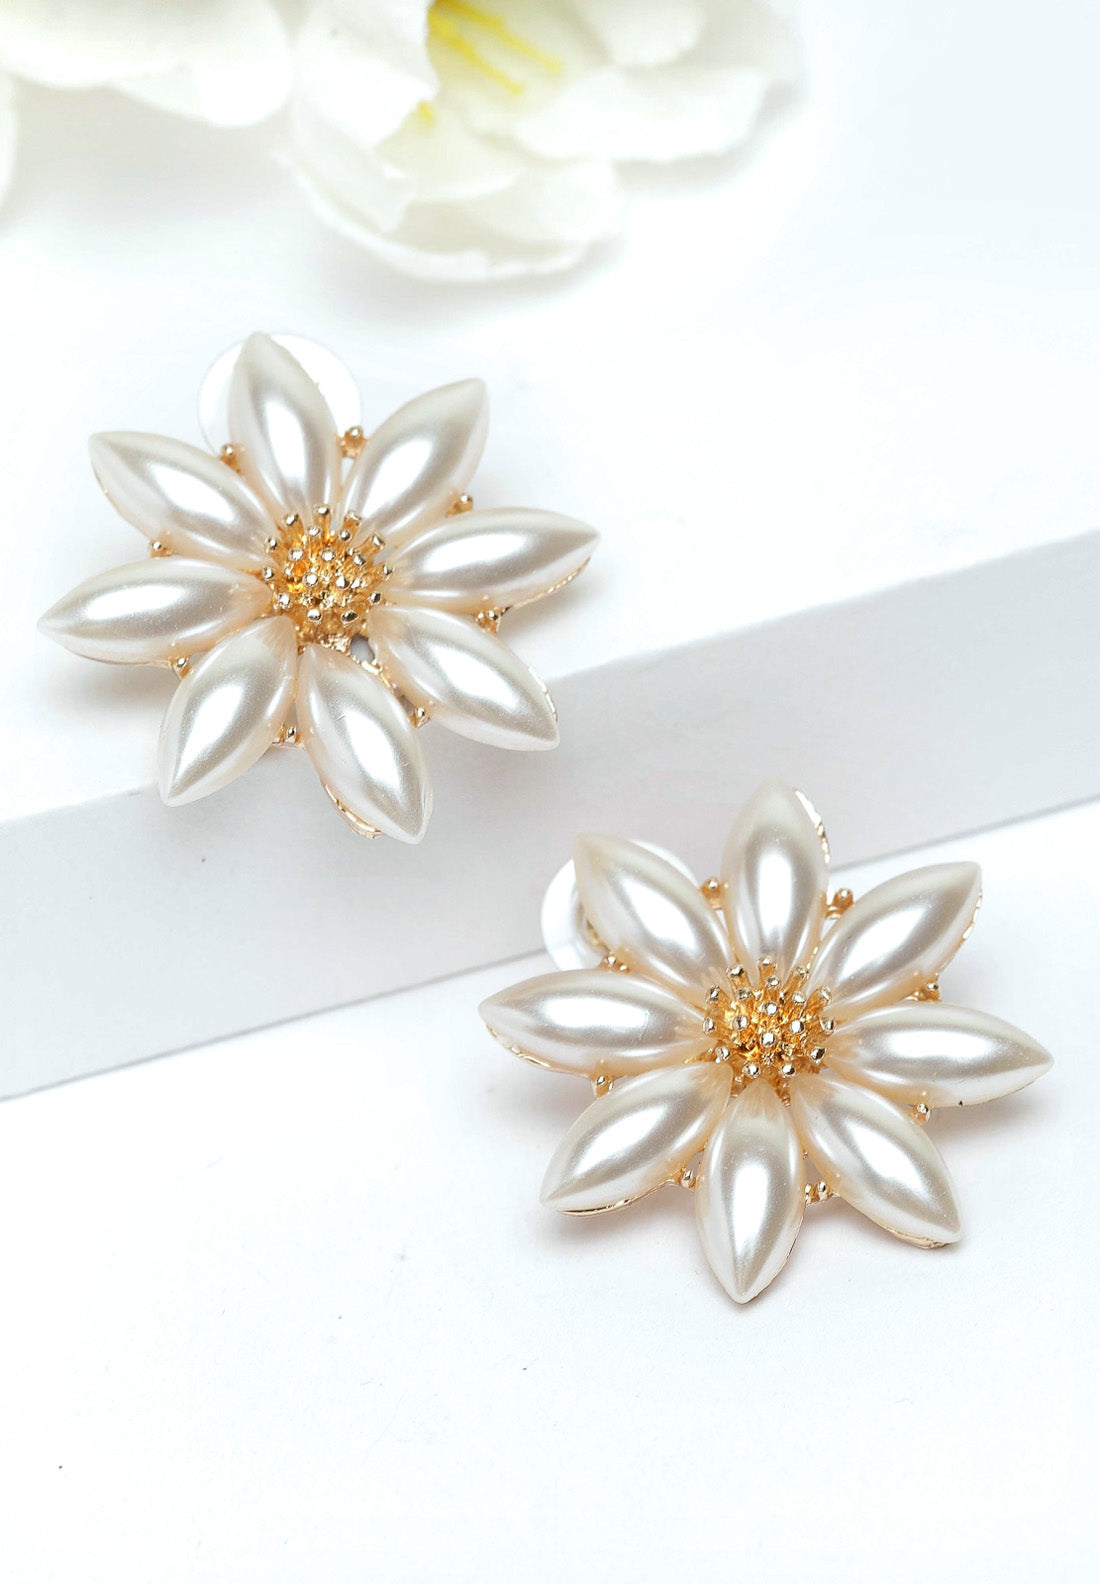 Avant-Garde Paris Gold Floral Pearl Stud Earrings